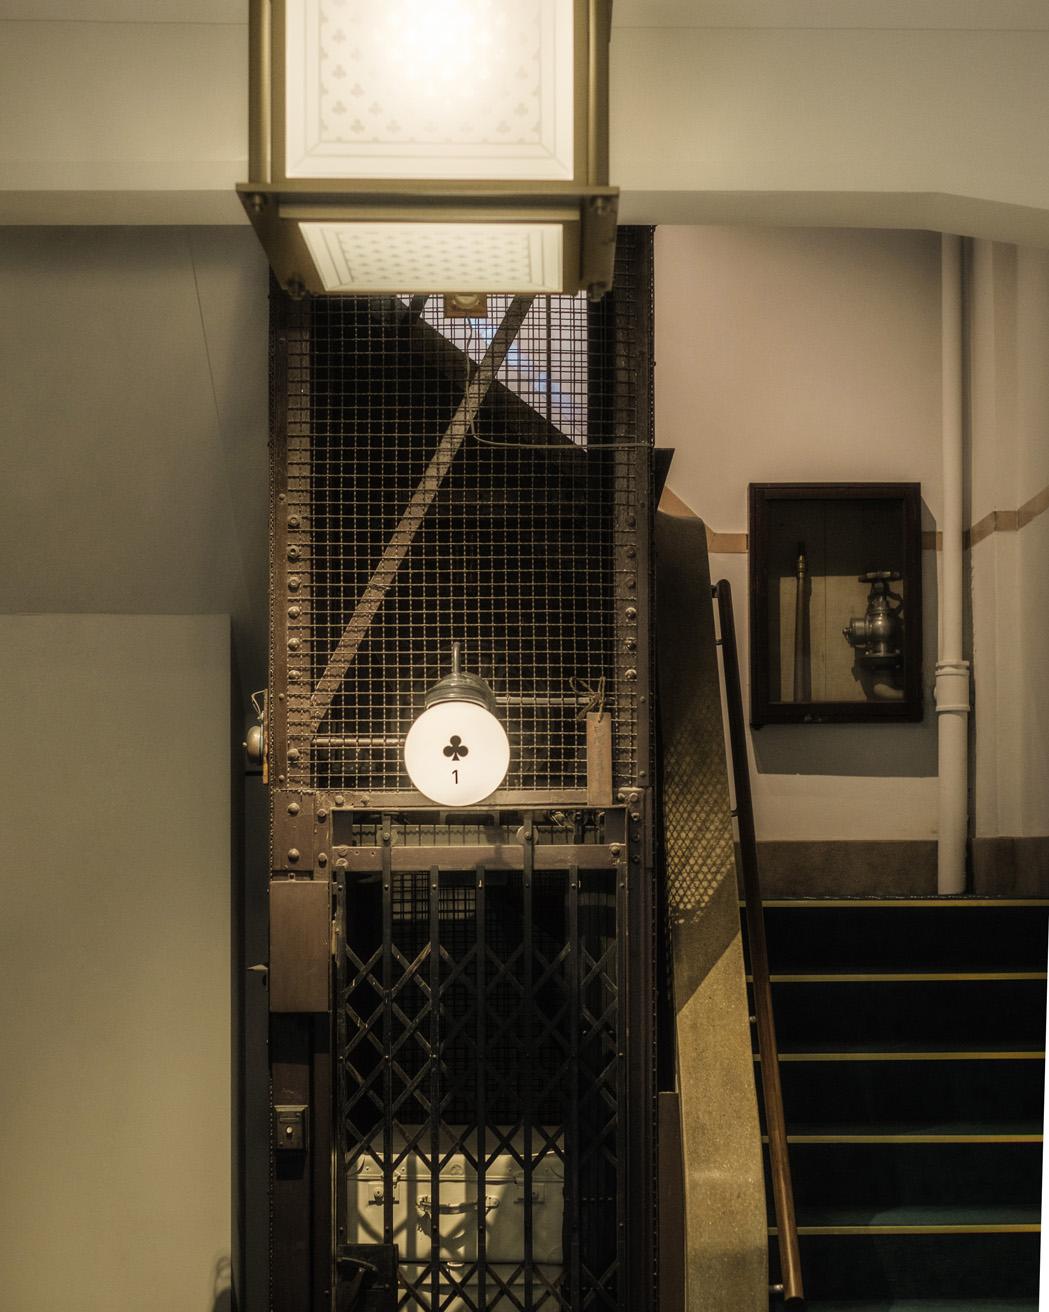 クローバー棟の階段横には、かつて実際に使用されていたエレベーターが装飾として残されている。